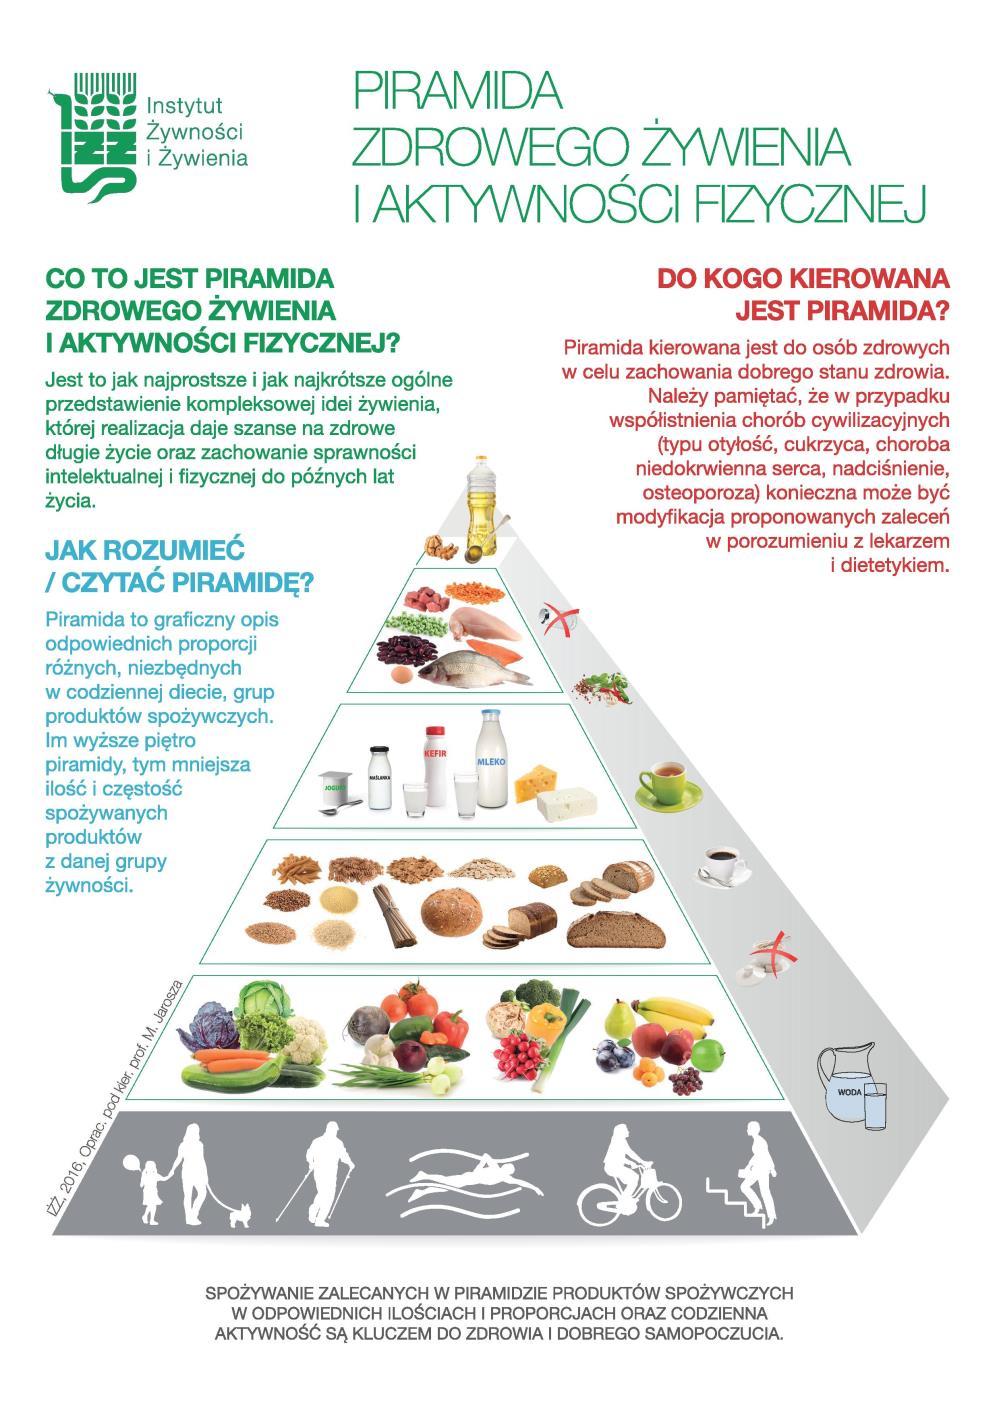 Piramida zdrowego żywienia i aktywności fizycznej 2016 - awans warzyw i owoców na pierwsze miejsce wśród zalecanych produktów spożywczych (po